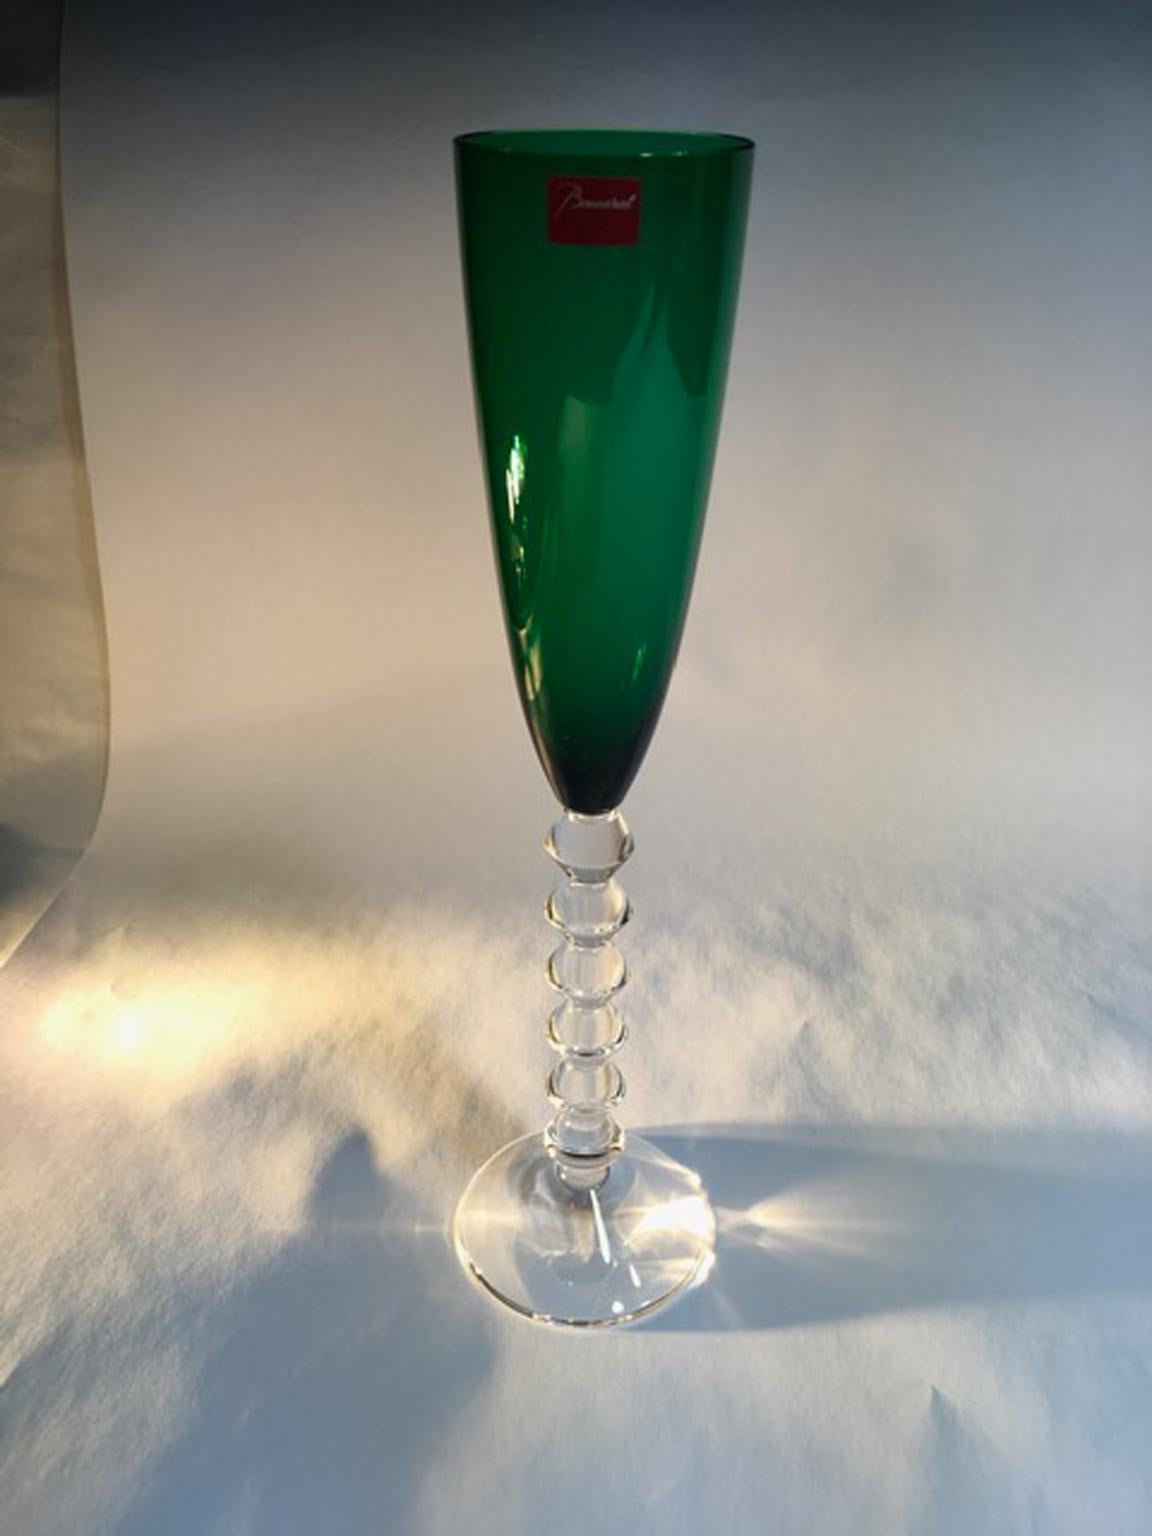 Baccarat Green Crystal Goblet, France 3